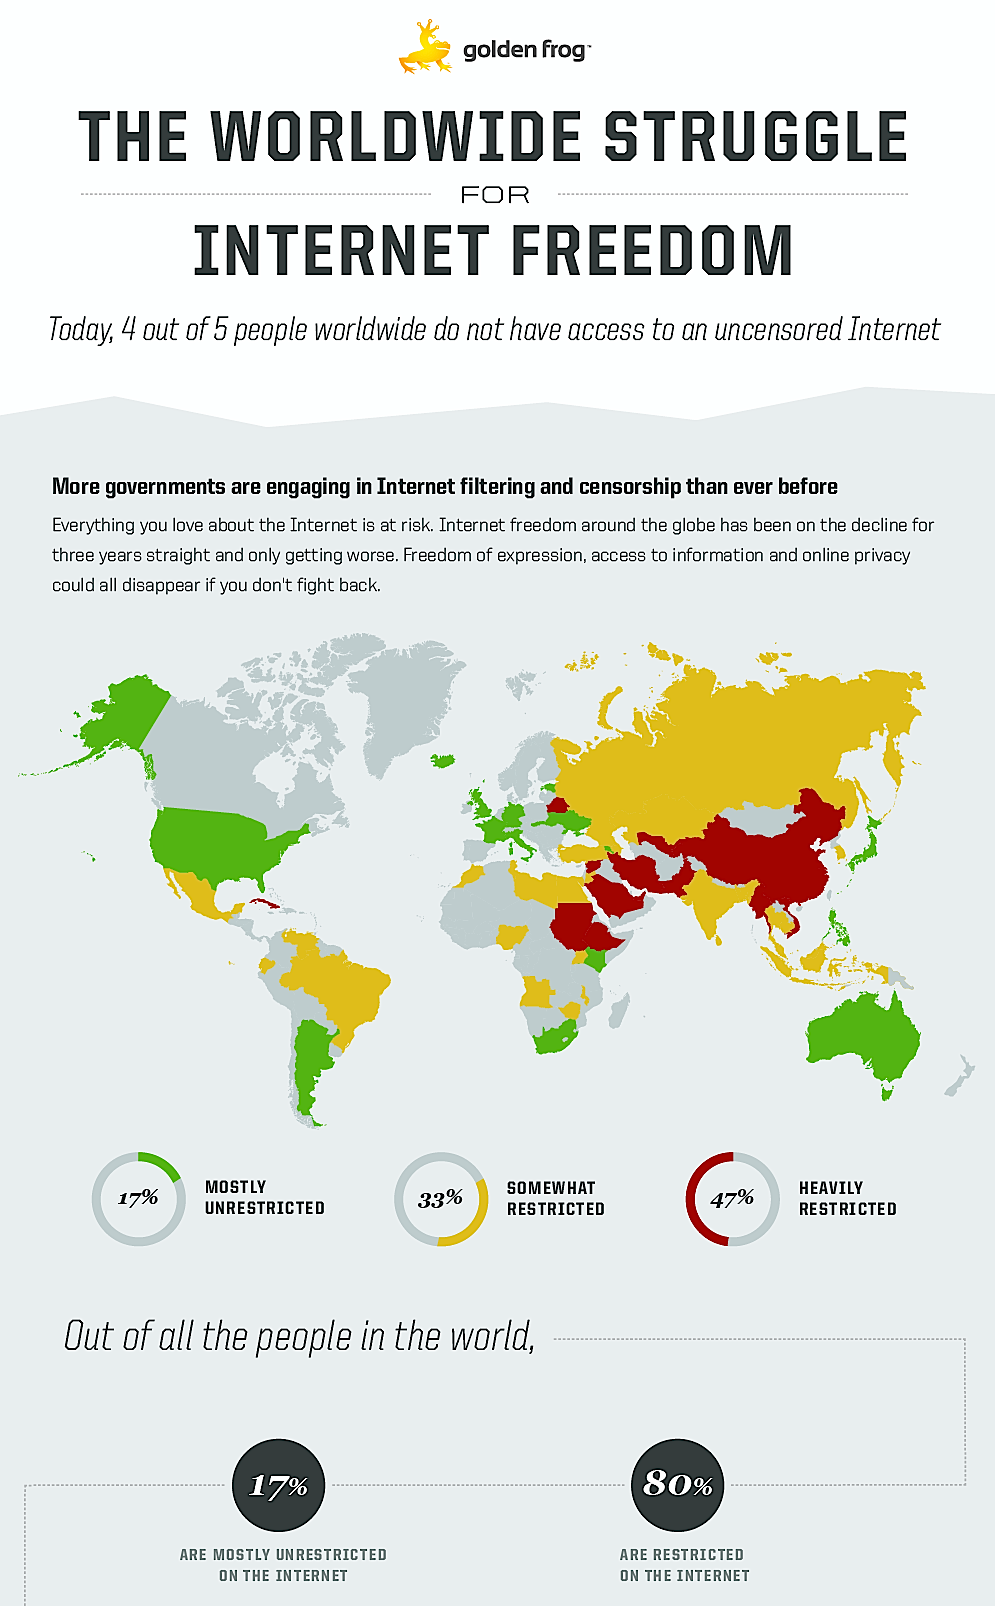 Vier von fünf Menschen weltweit haben keinen freien Zugang zum Internet, so das IT-Unternehmen Golden Frog. Bei 47 Prozent ist das Internet stark reglementiert und zensiert.